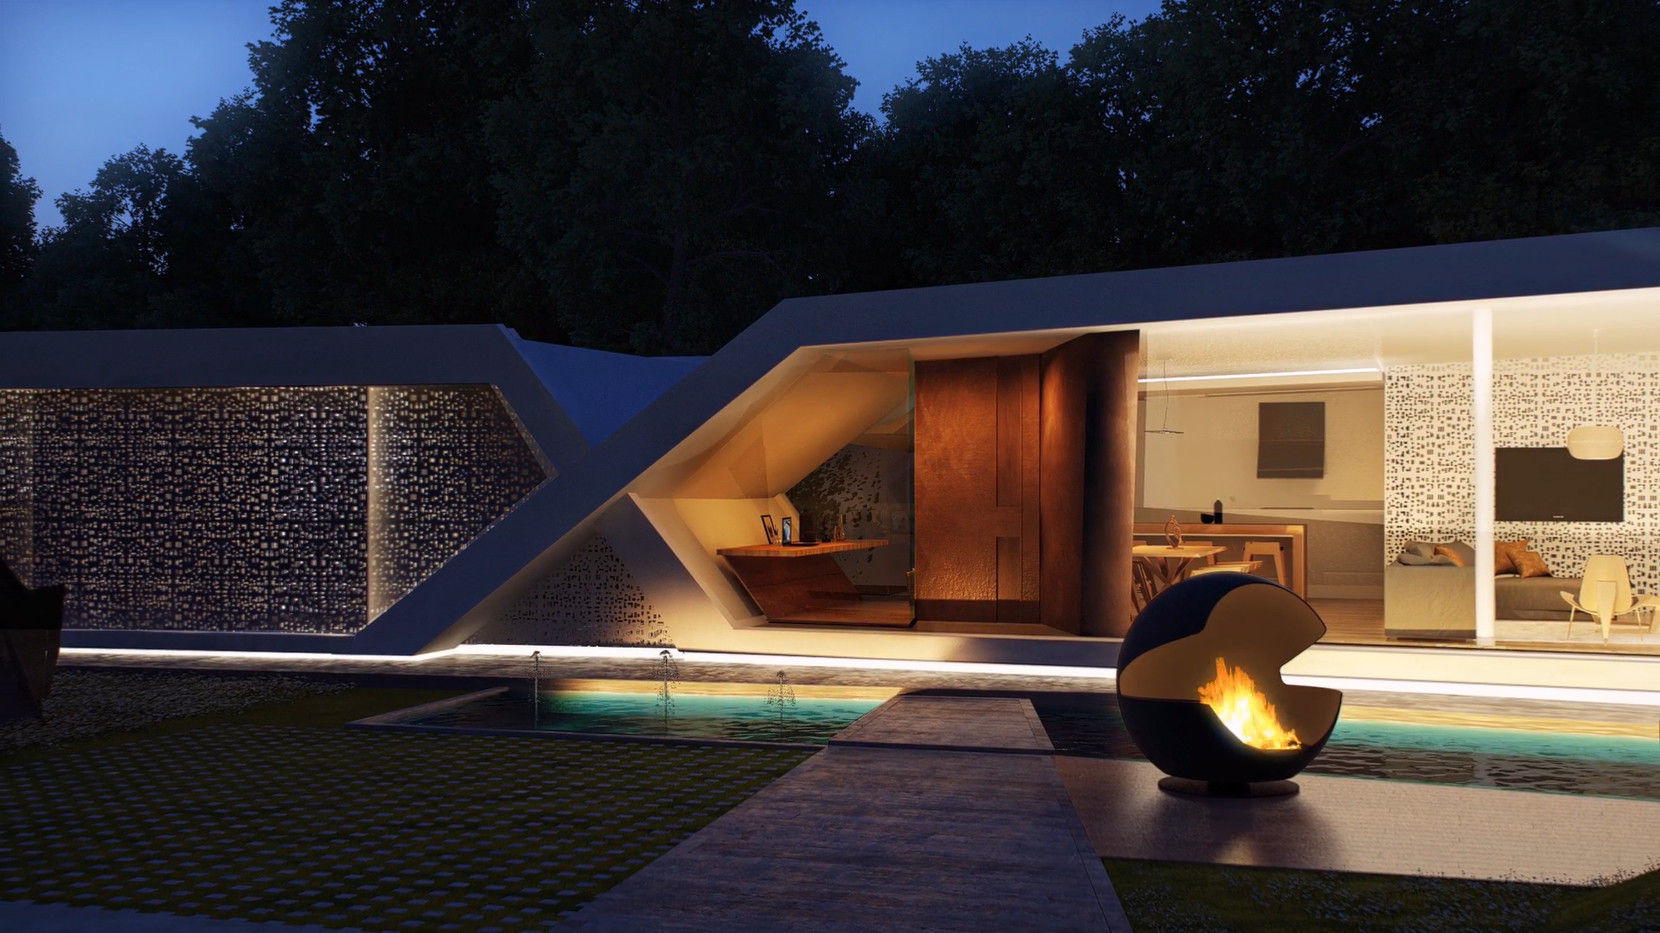 Ingreso homify Casas modernas: Ideas, imágenes y decoración casa,fachada,diseño,iluminacion,moderna,minimalista